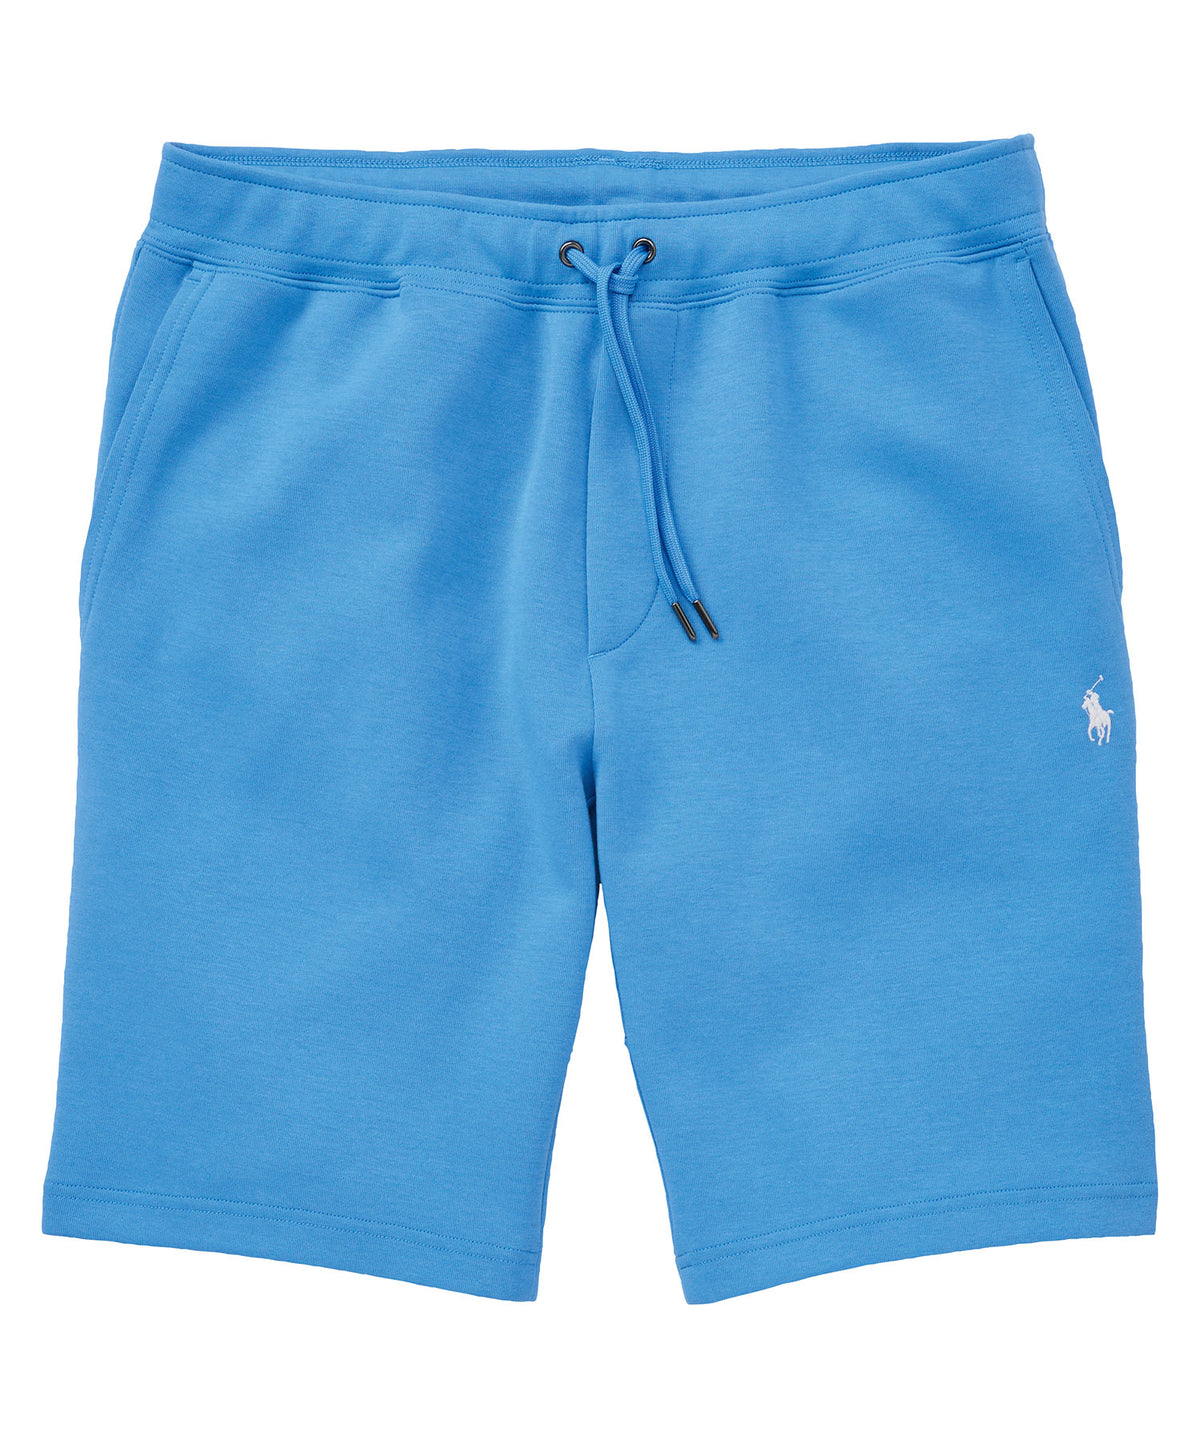 Polo Ralph Lauren Double Knit Short, Men's Big & Tall